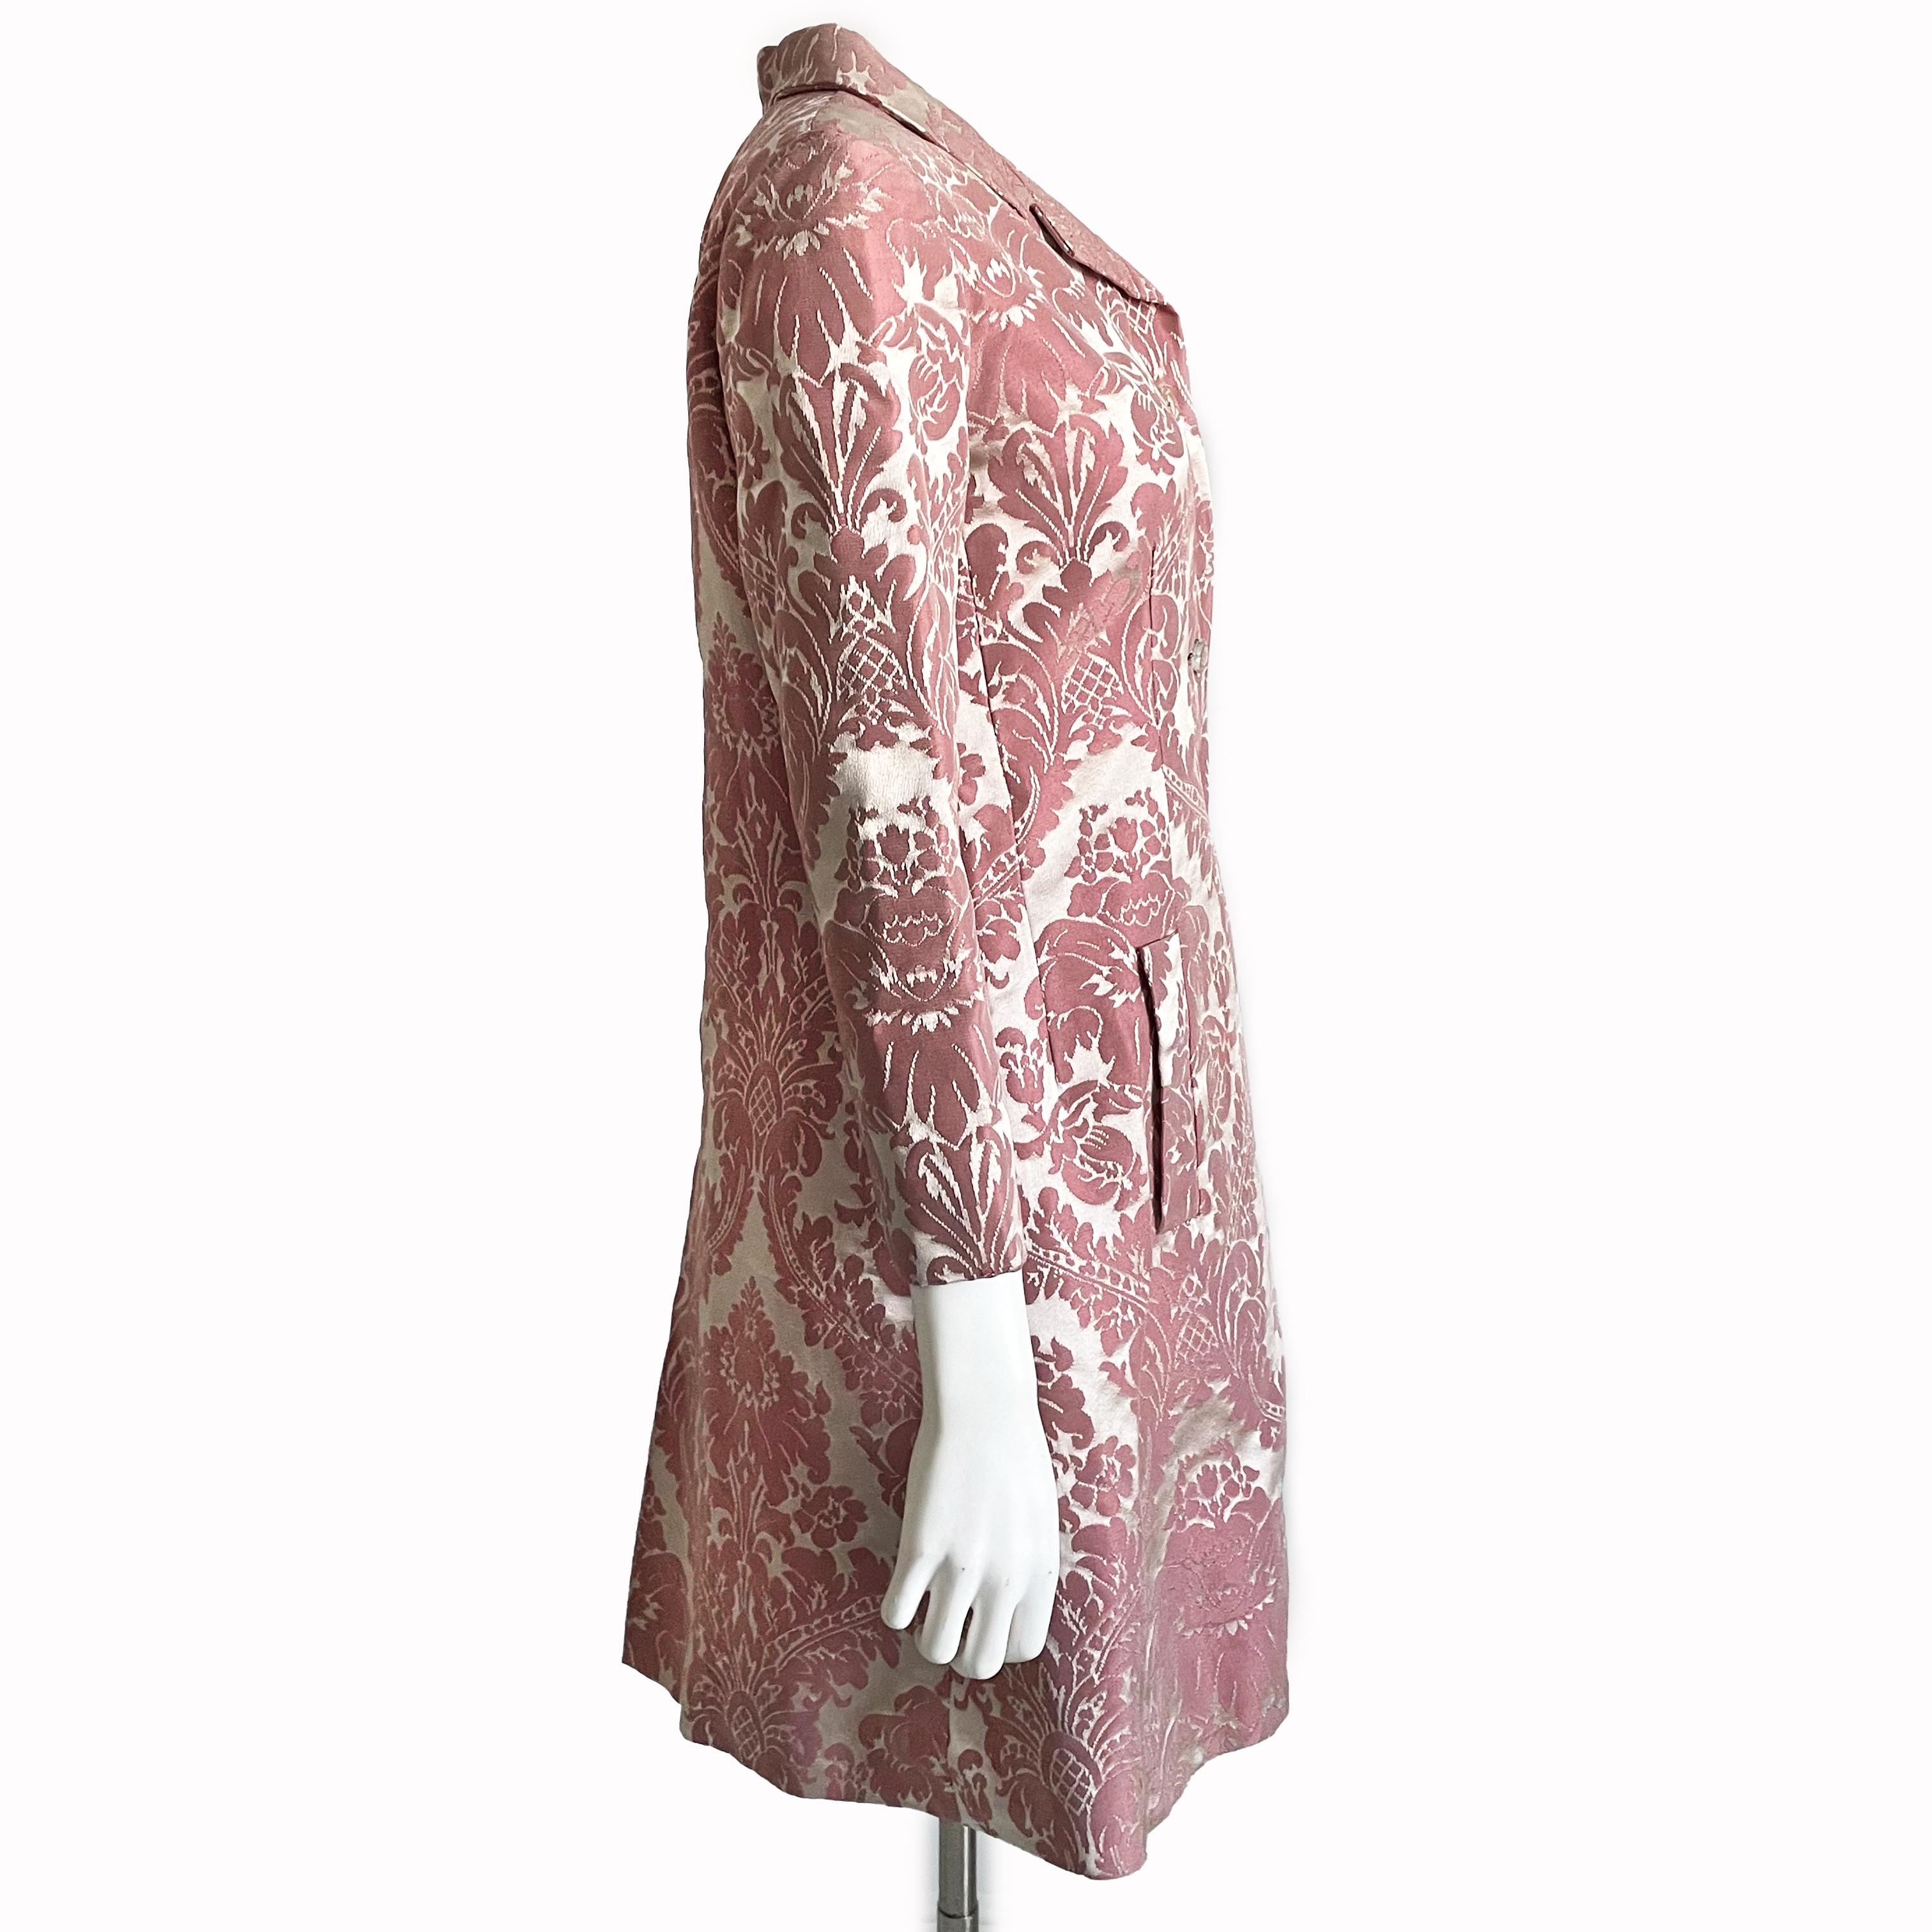 Chester Weinberg Dress Pink Floral Damask 60s Oval Room Dayton's Vintage Rare  2